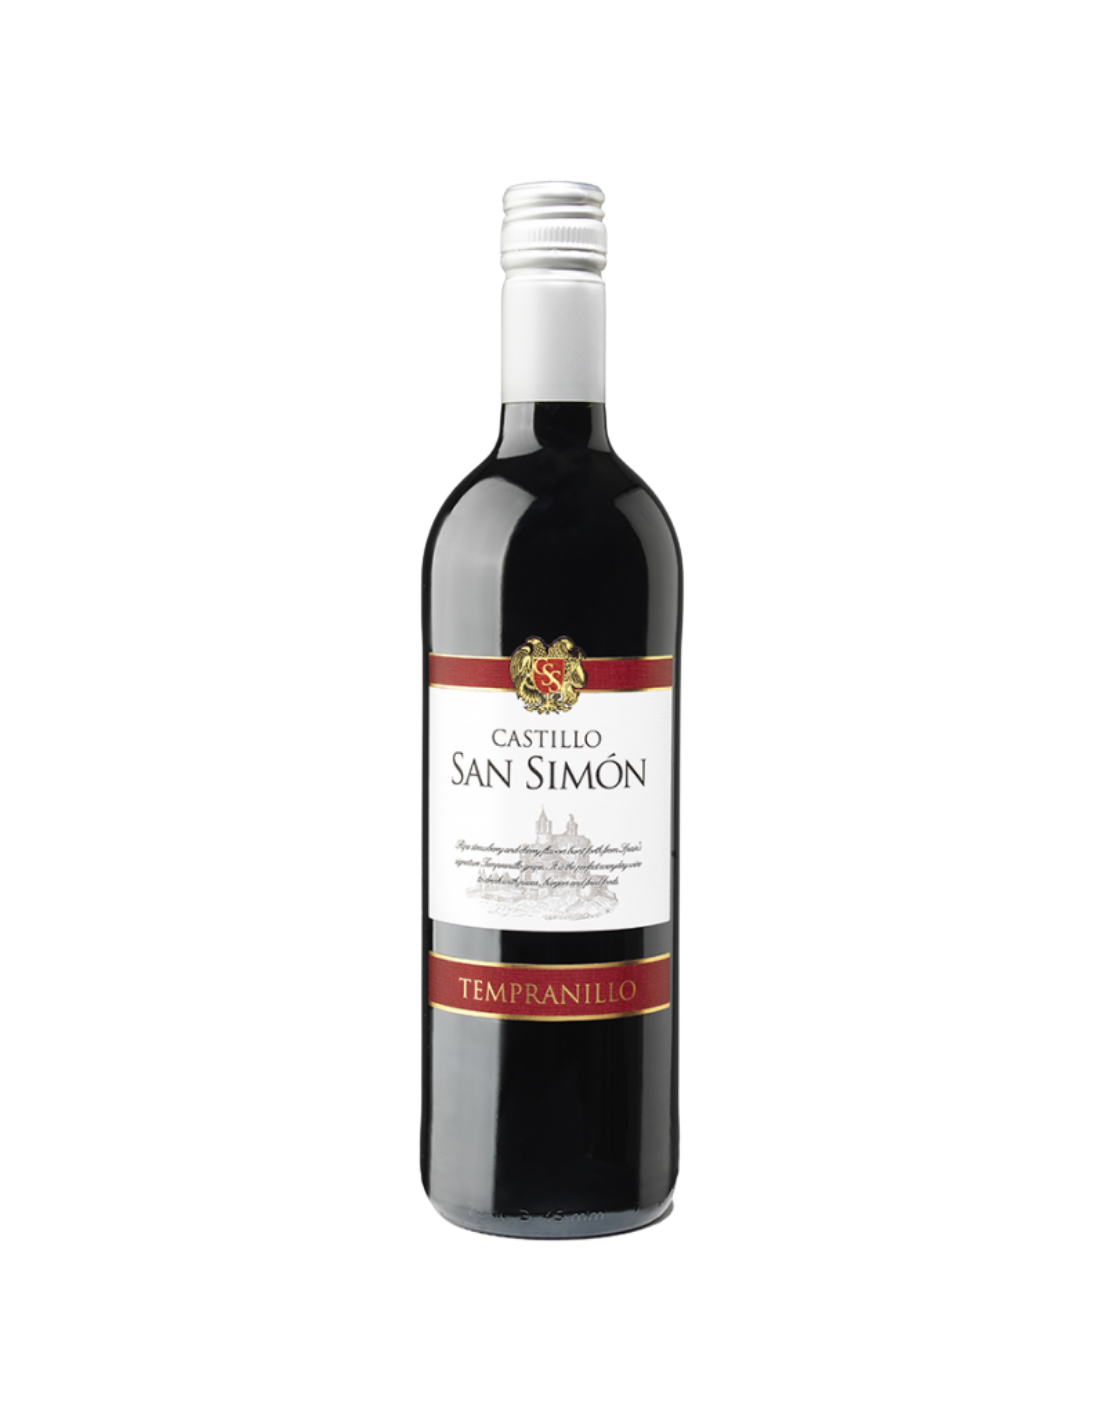 Vin rosu sec, Tempranillo, Castillo San Simon Jumilla, 12.5% alc., 0.75L, Spania alcooldiscount.ro